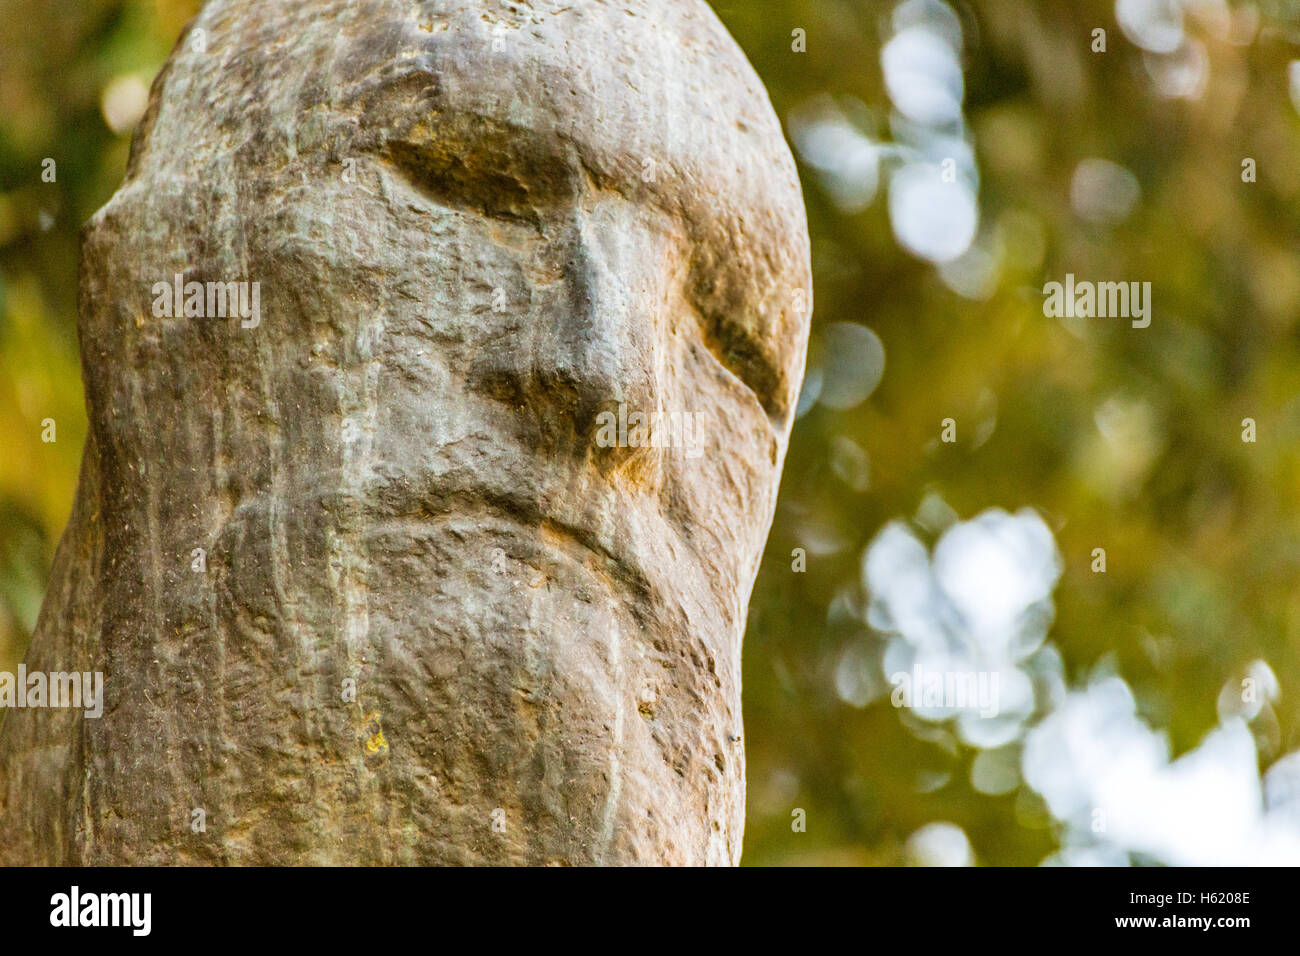 Statua con il volto irriconoscibile a causa di indistinte le caratteristiche facciali Foto Stock